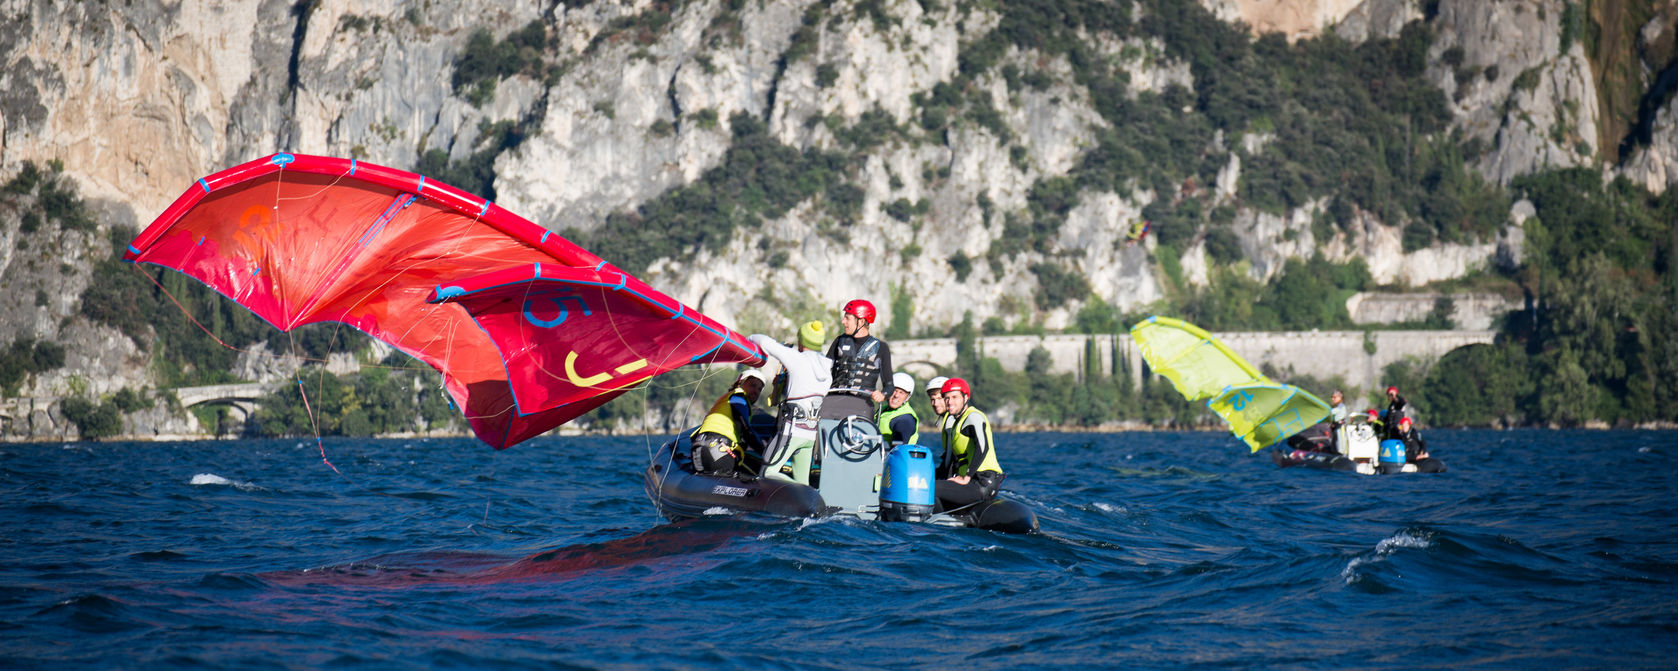 Kitesurfen lernen Italien